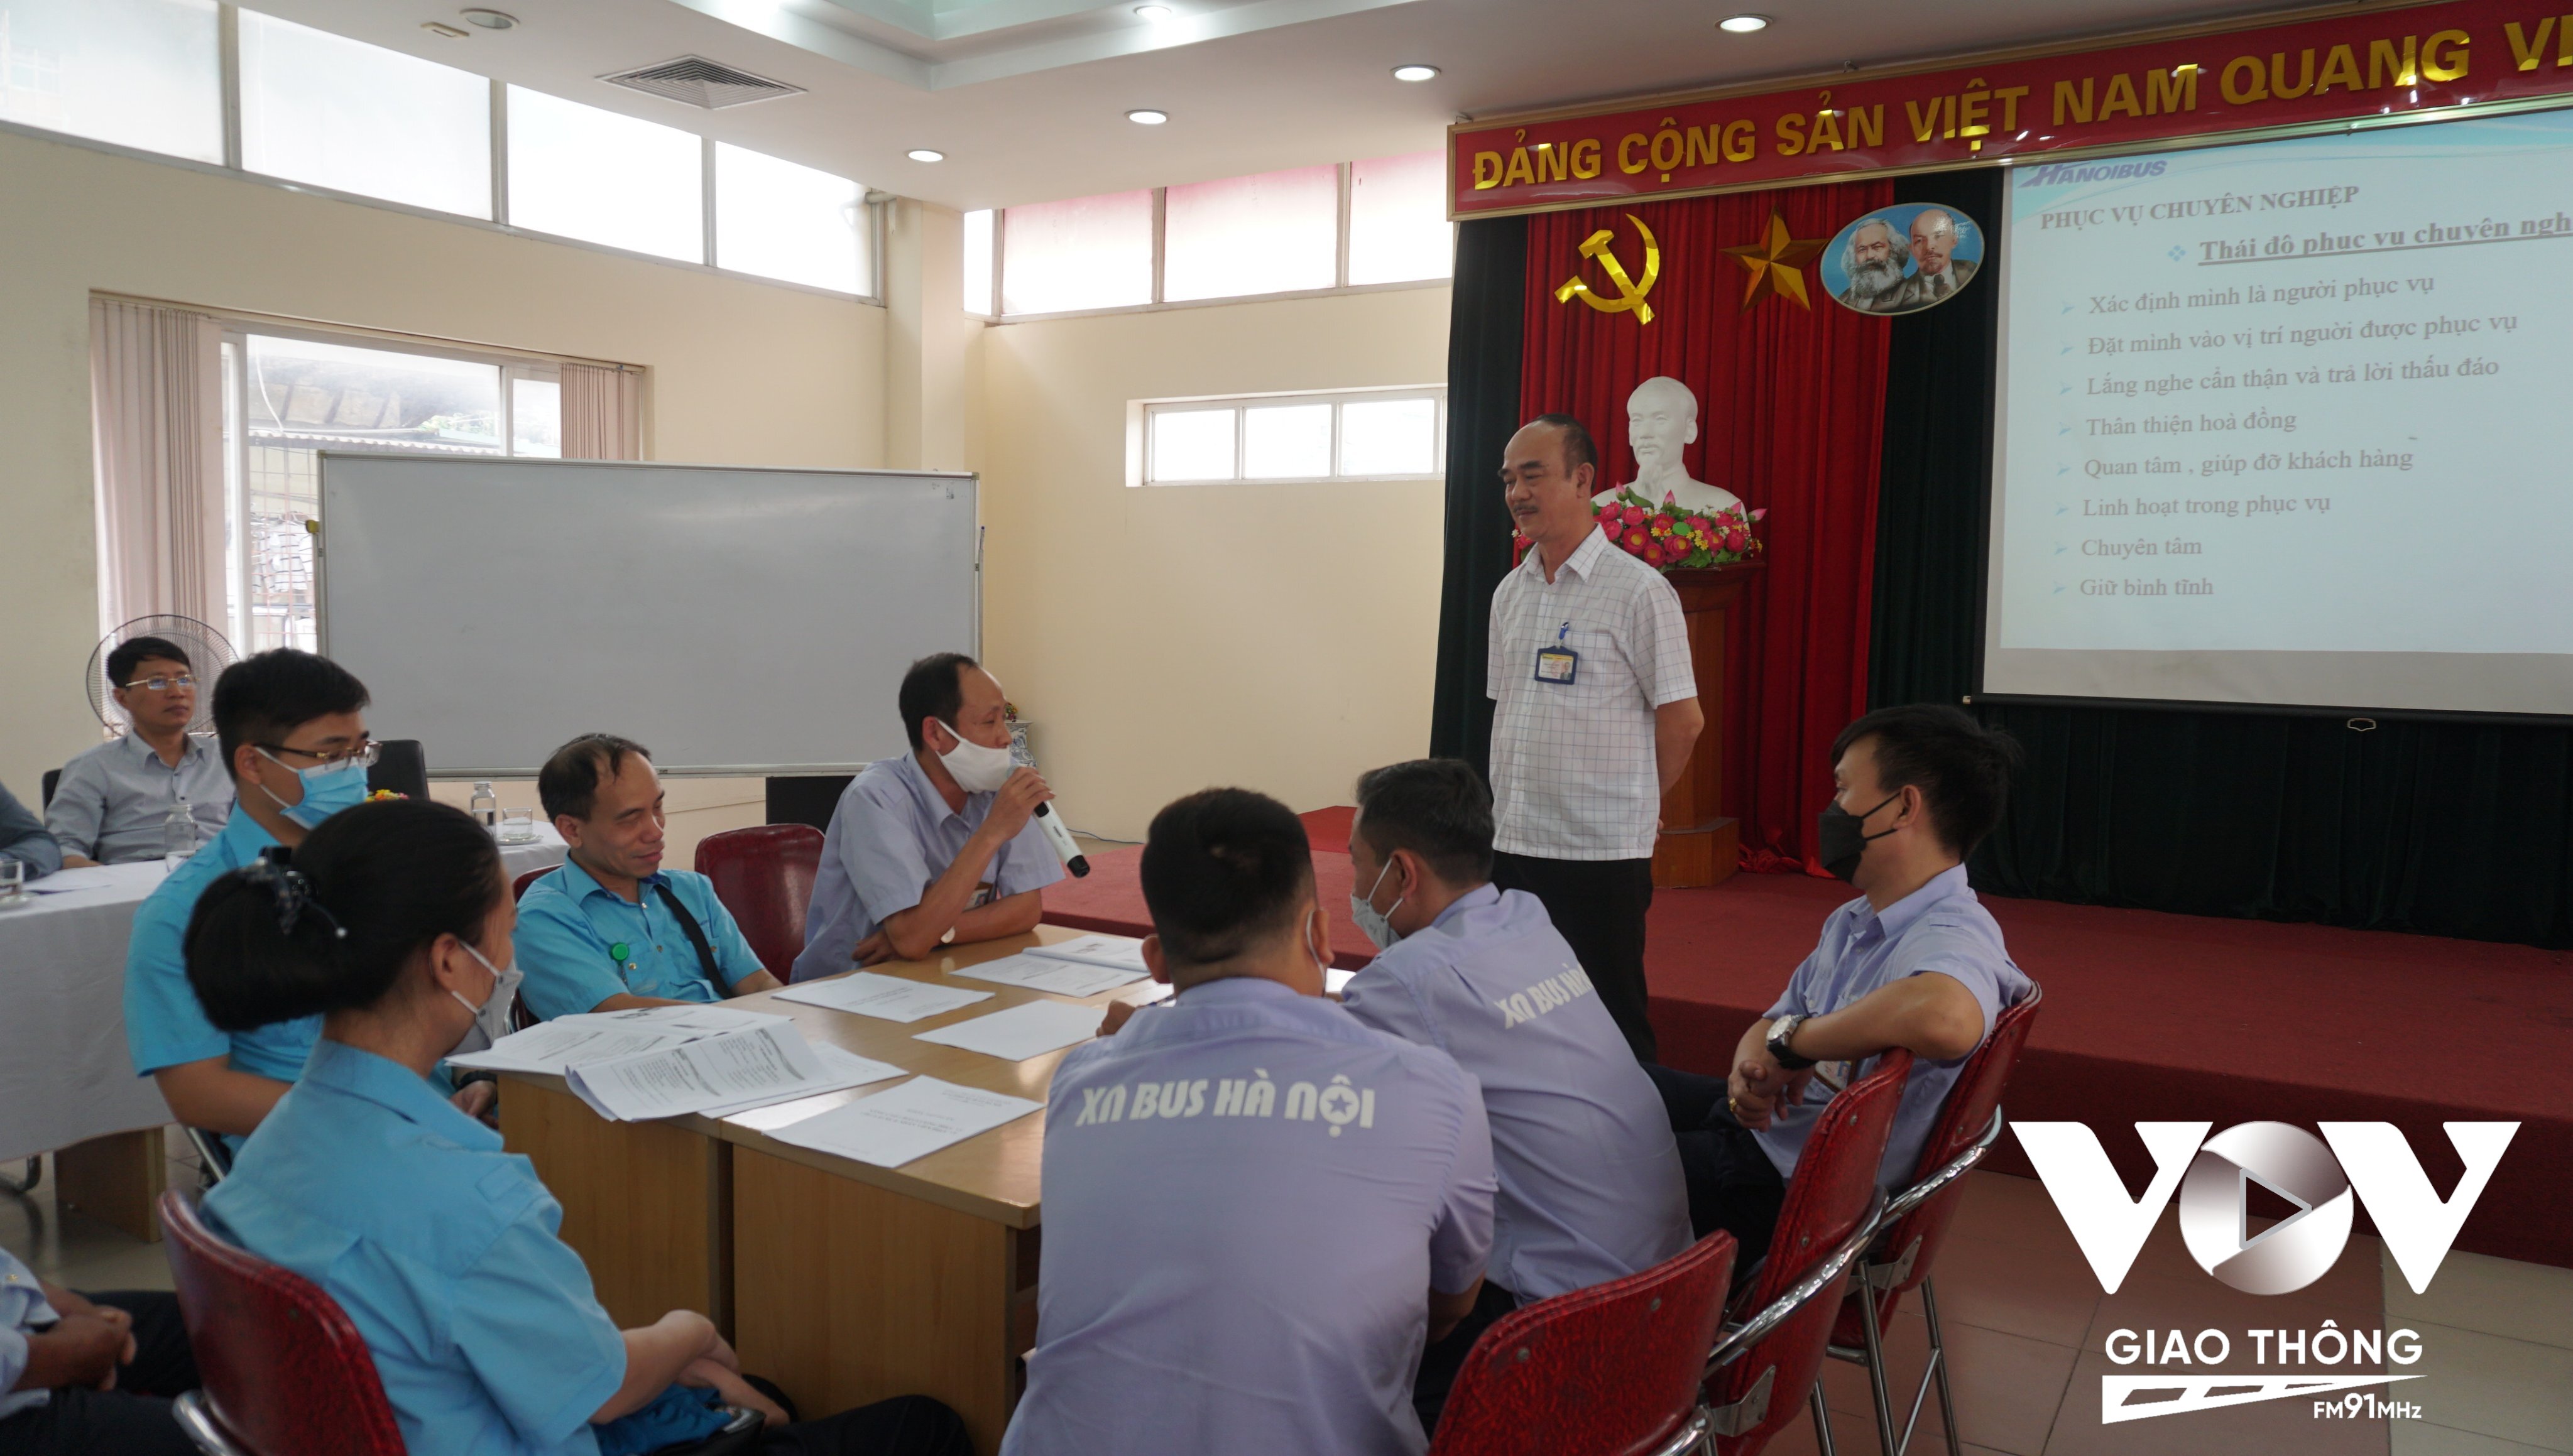 Ông Phan Quang Minh, giảng viên nội bộ của Transerco cùng các học viên trao đổi về những tình huống phát sinh trong quá trình vận hành tuyến xe buýt.